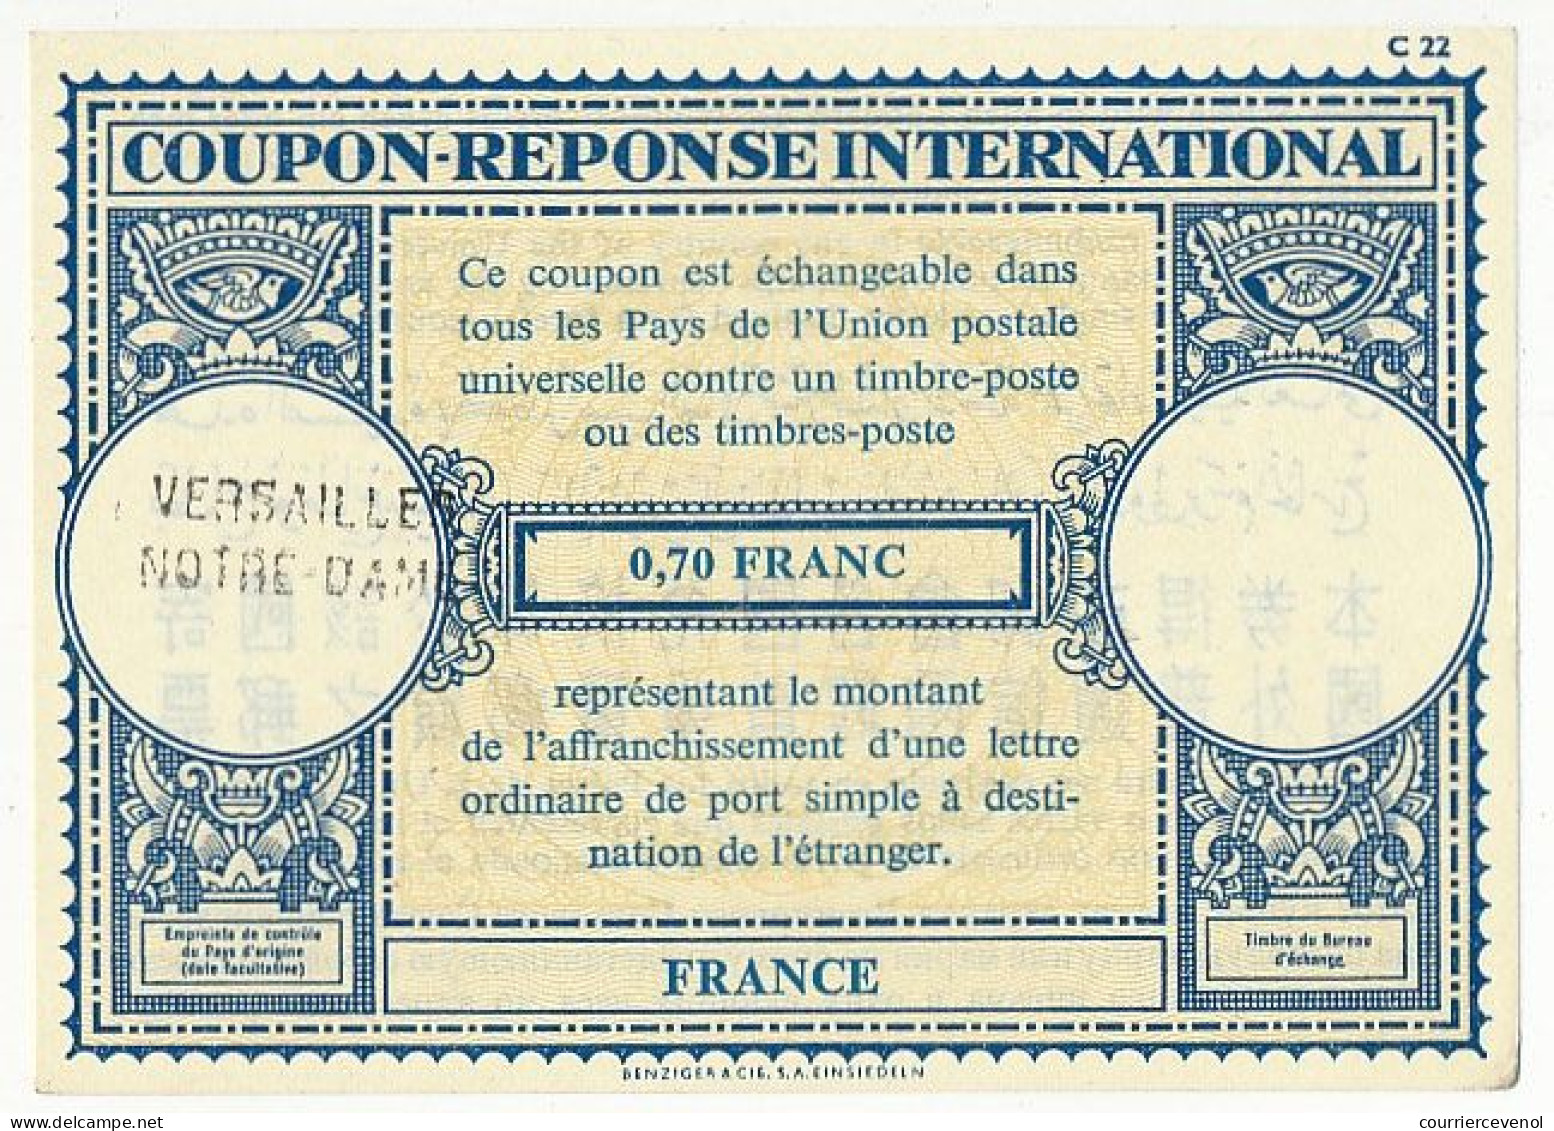 Coupon-Réponse International 0,70 Franc - Cachet Linéaire Versailles Notre Dame - Antwortscheine